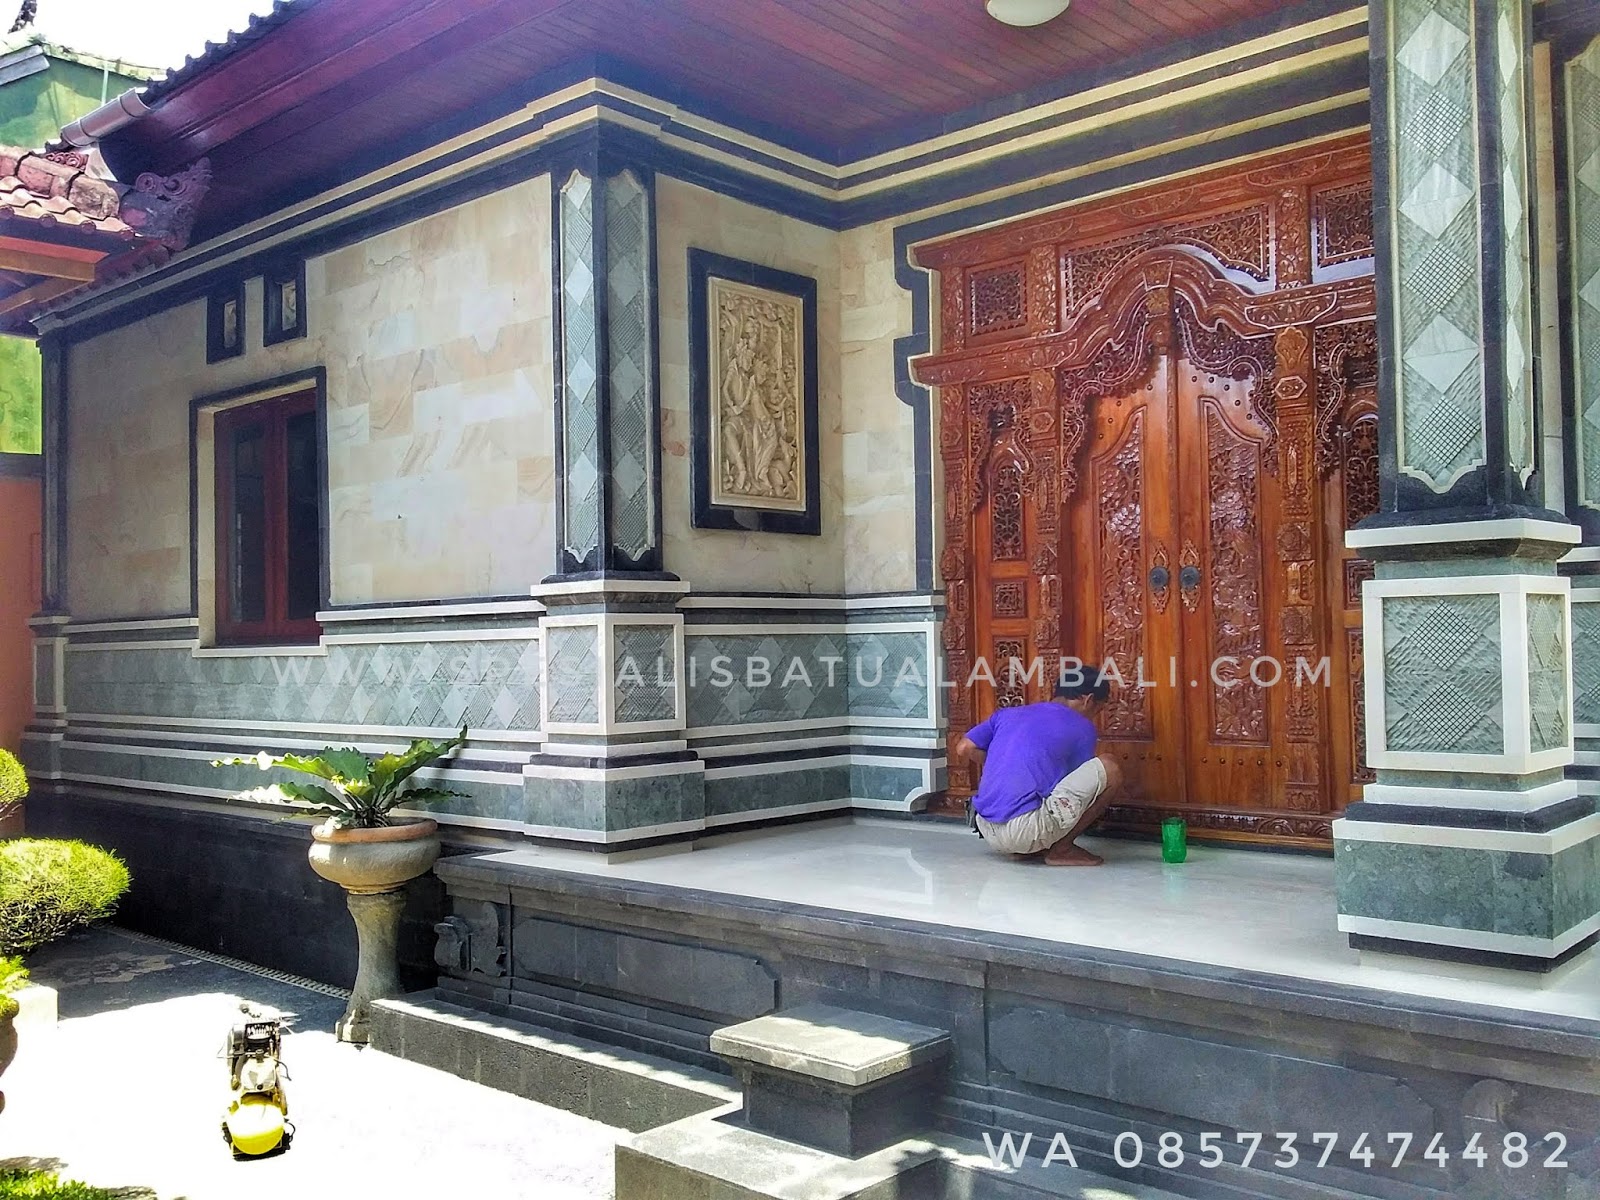 Rumah Minimalis Di Sanur Spesialis Batu Alam Bali